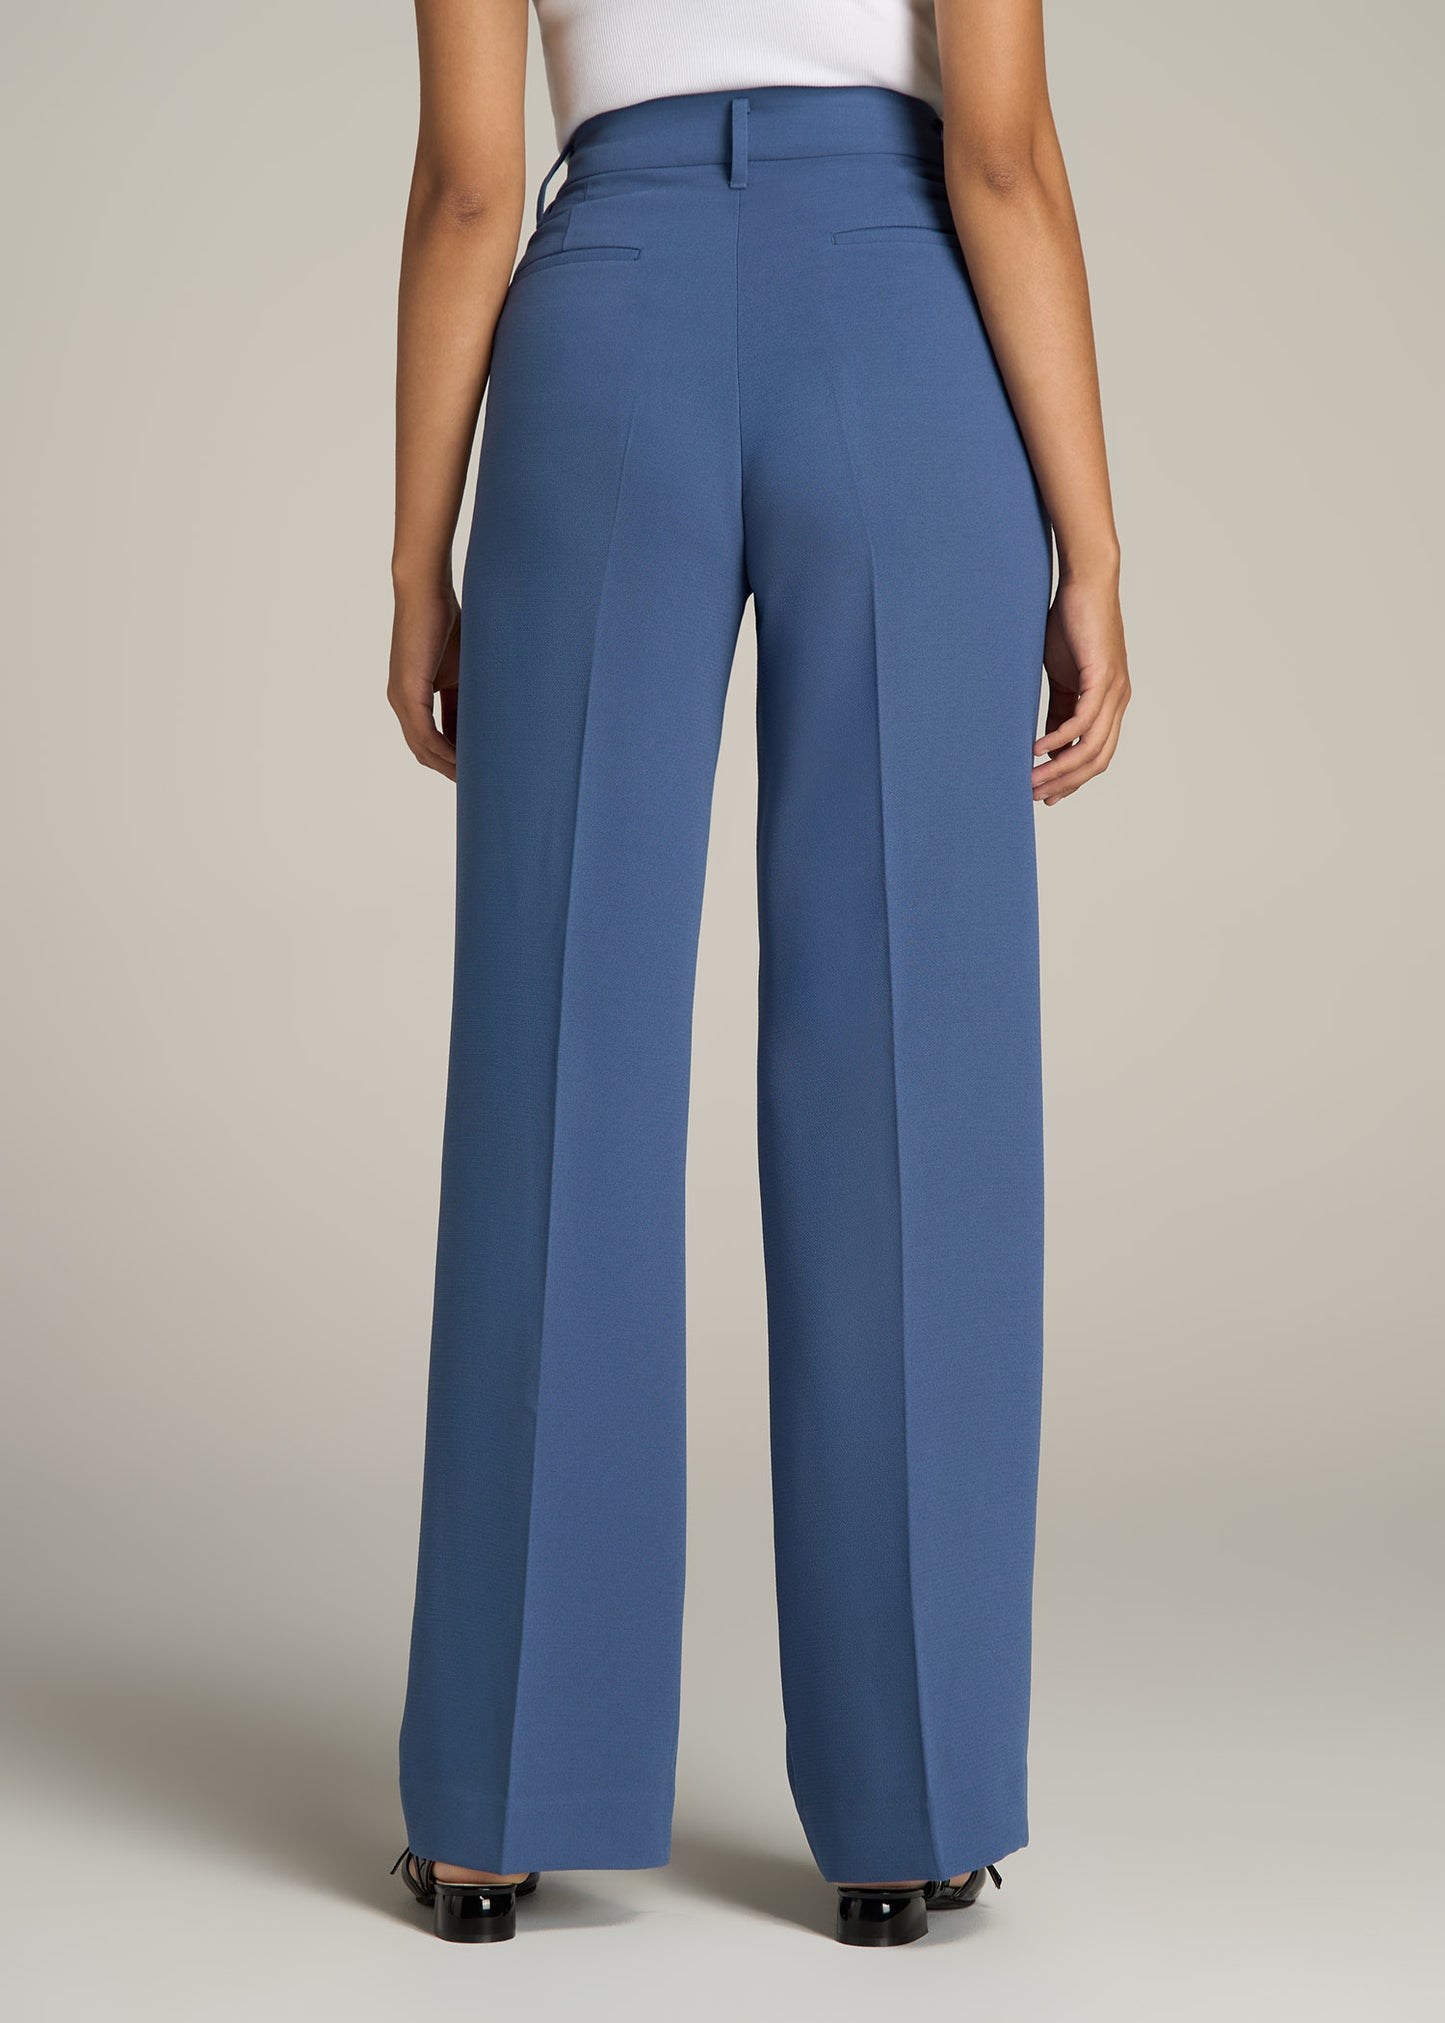 Pleated WIDE Leg Dress Pants for Tall Women in Steel Blue